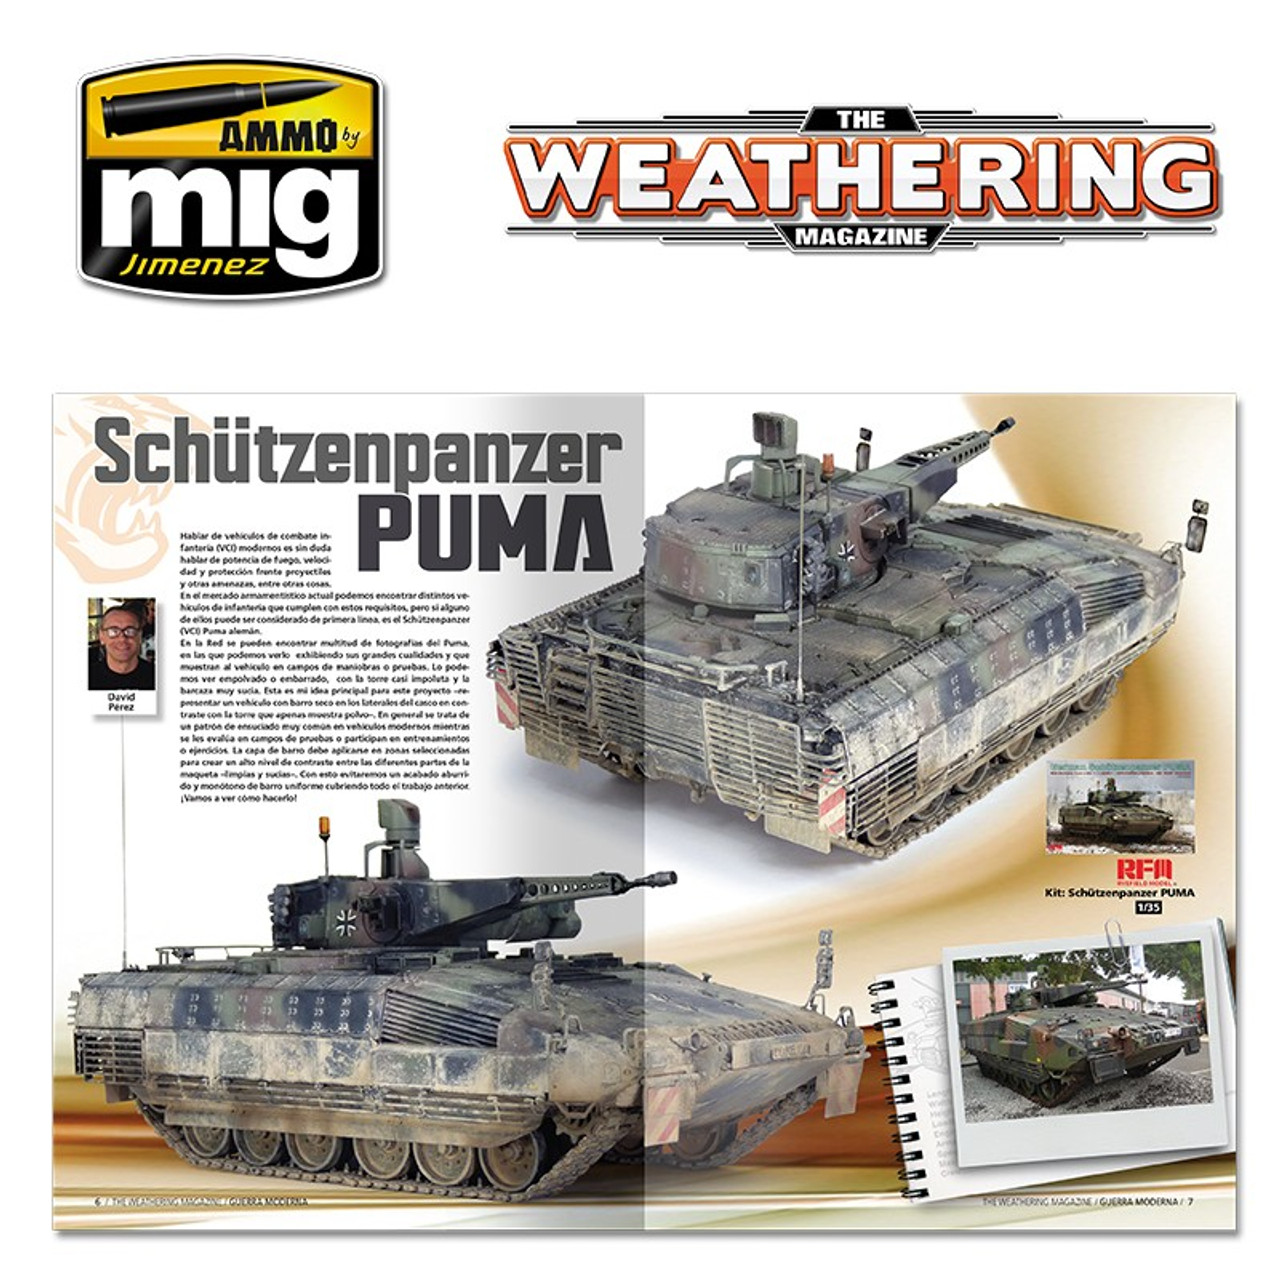 Weathering Magazine 026: Modern Warfare